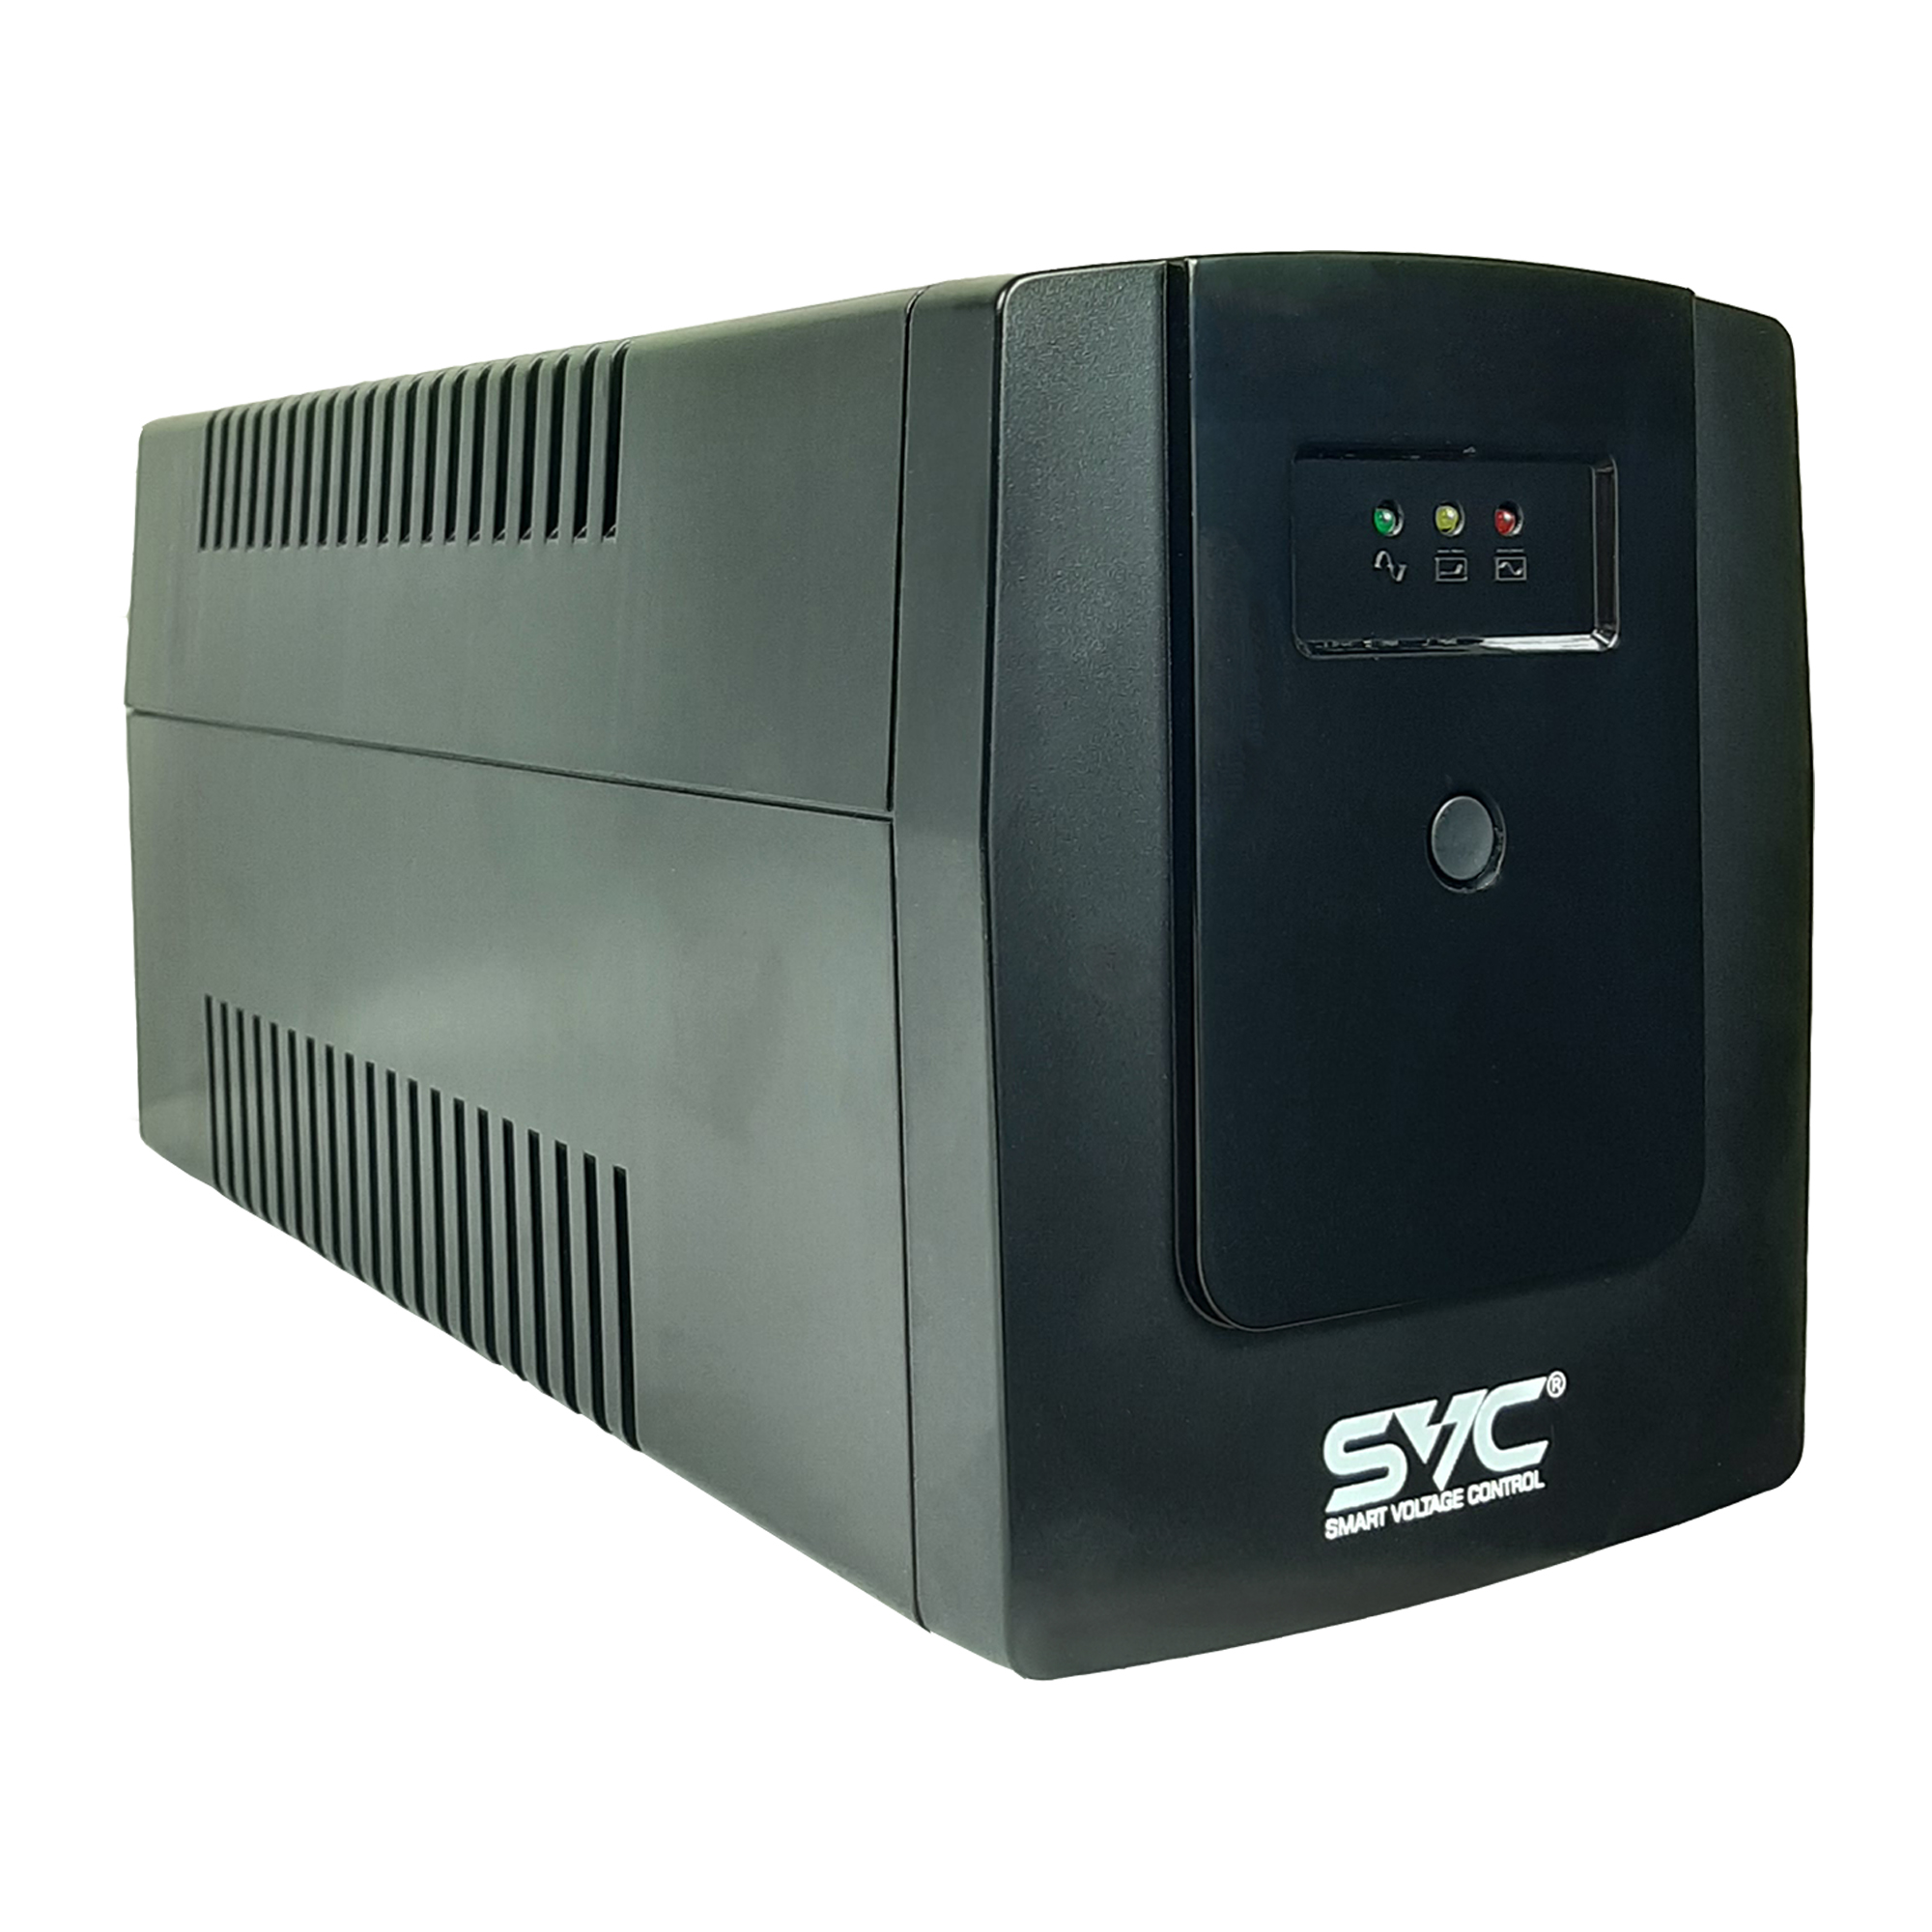 ИБП SVC V-1500-R, 1500 В·А, 900 Вт, EURO, розеток - 3, черный (V-1500-R)